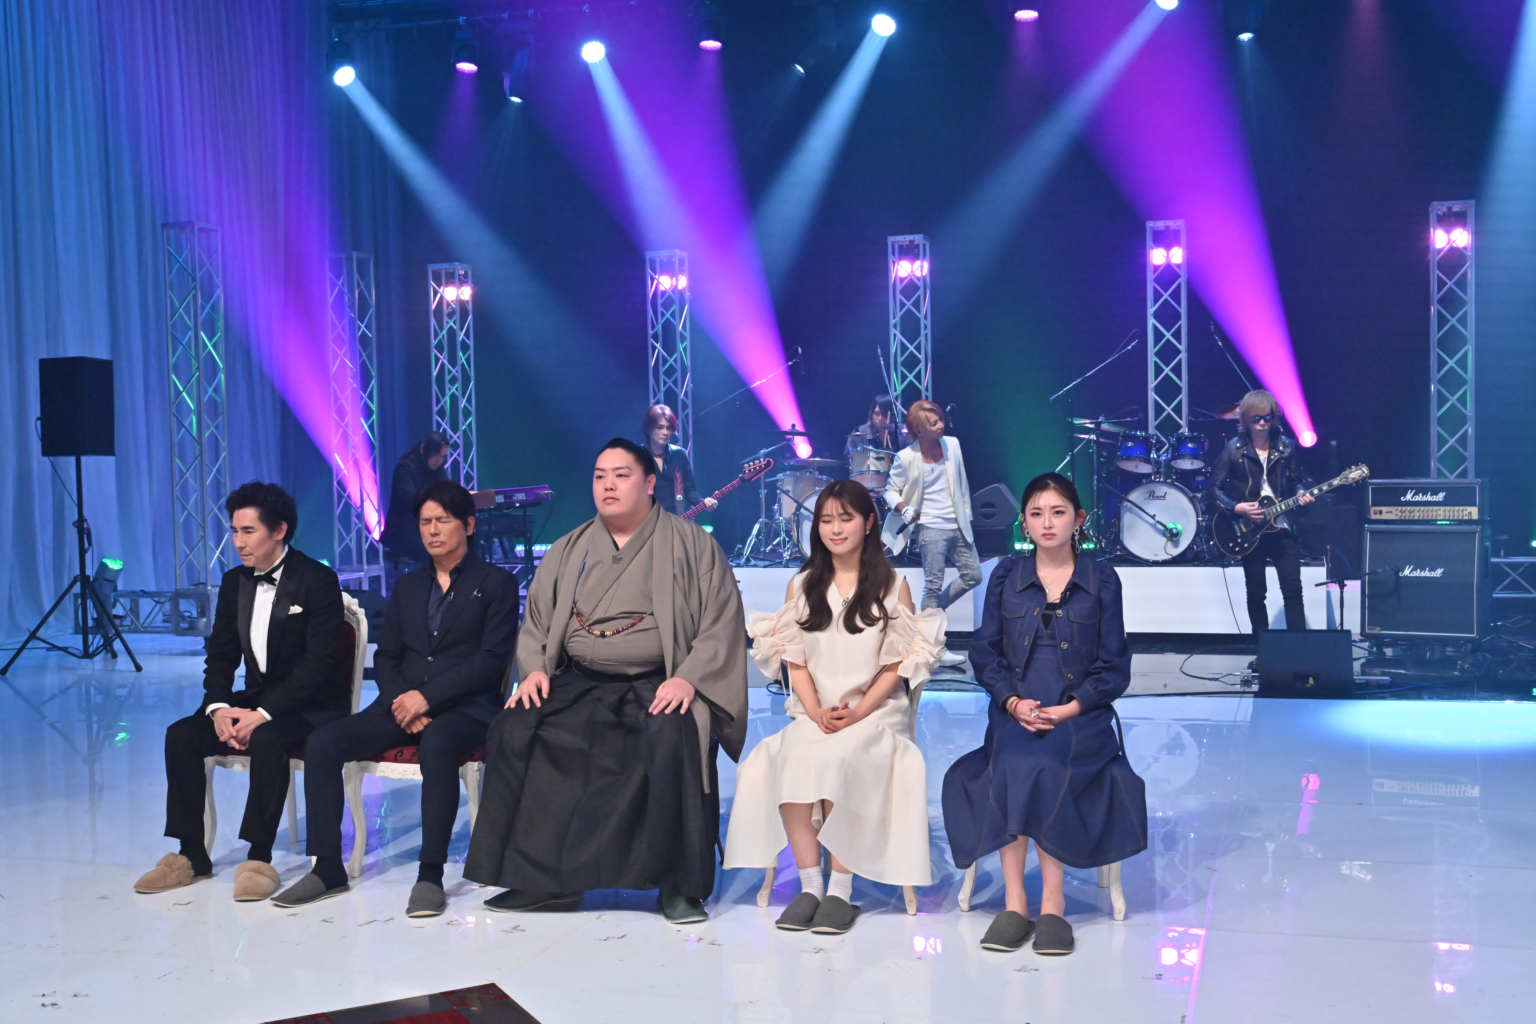 ステージ上で着物を着た男性とドレス姿の女性が並んで座っていて、バンドセットが背後にあります。